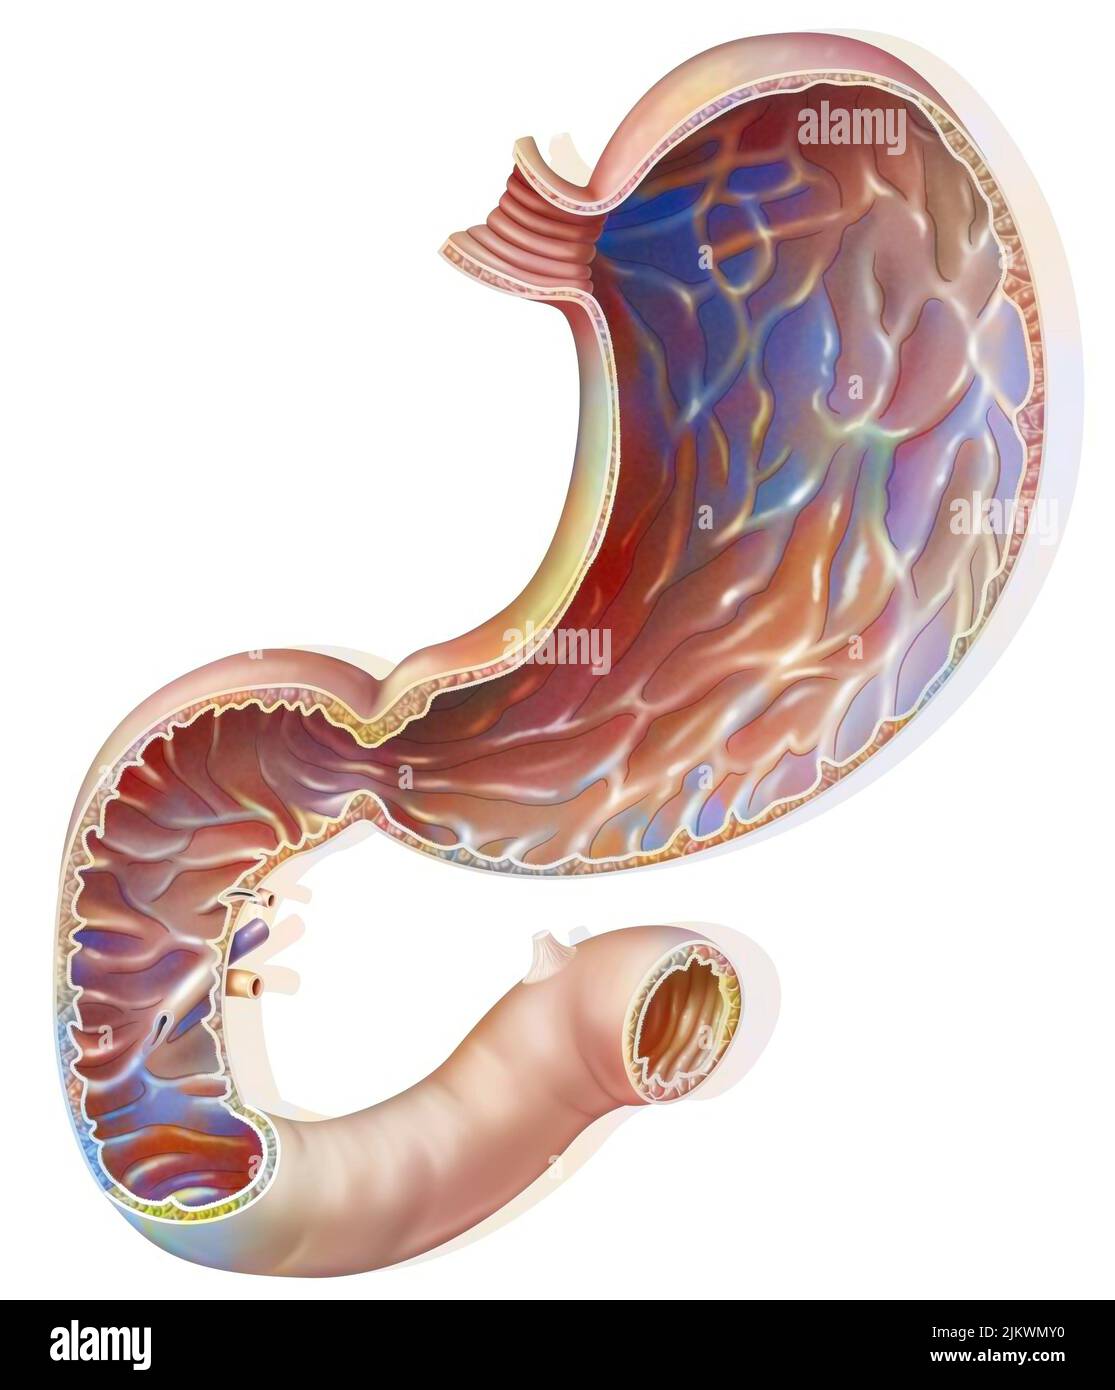 Sección del estómago y duodeno con la mucosa gástrica. Foto de stock